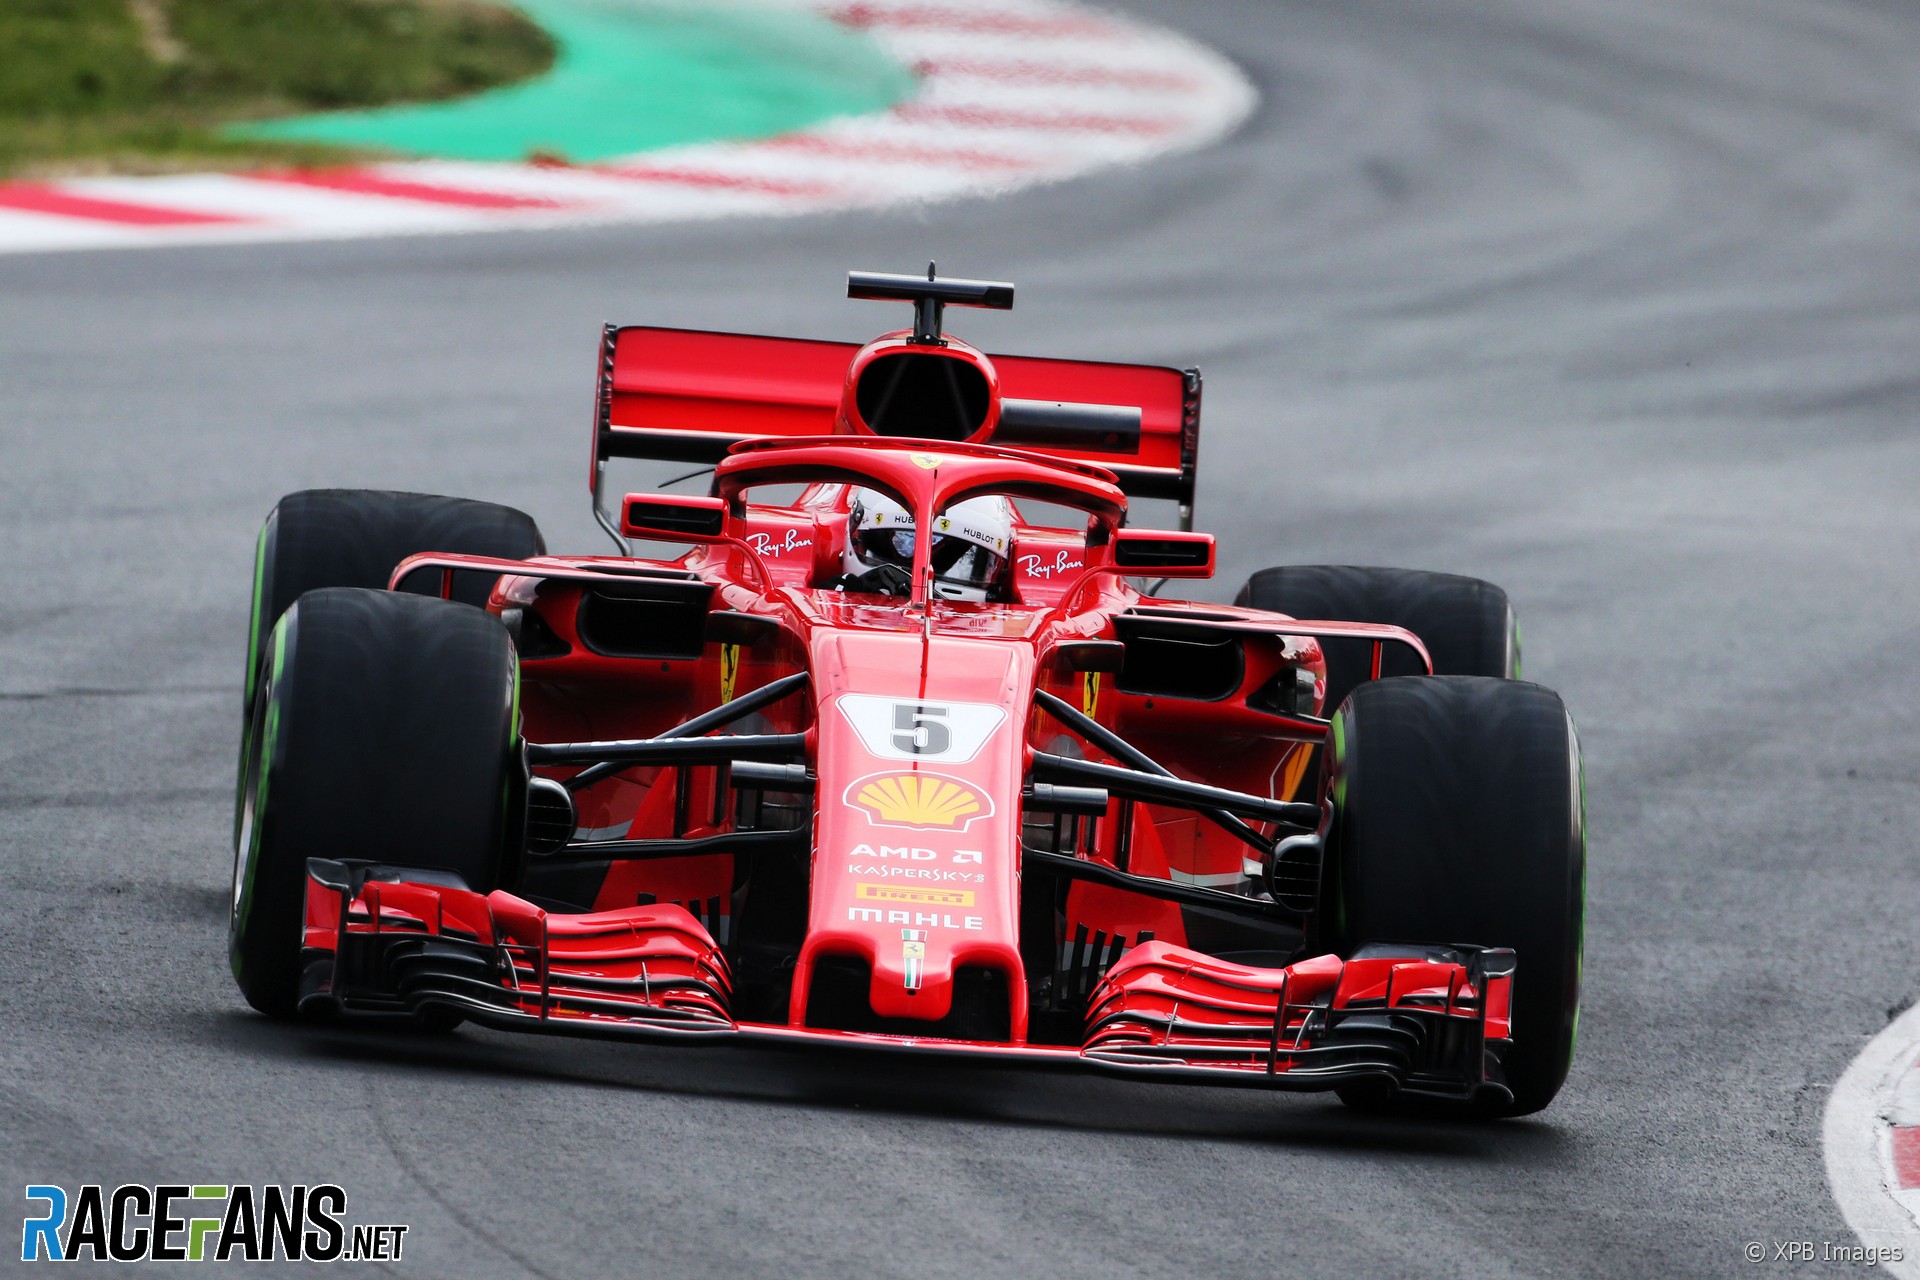 Sebastian Vettel, Ferrari, Circuit de Catalunya, 2018